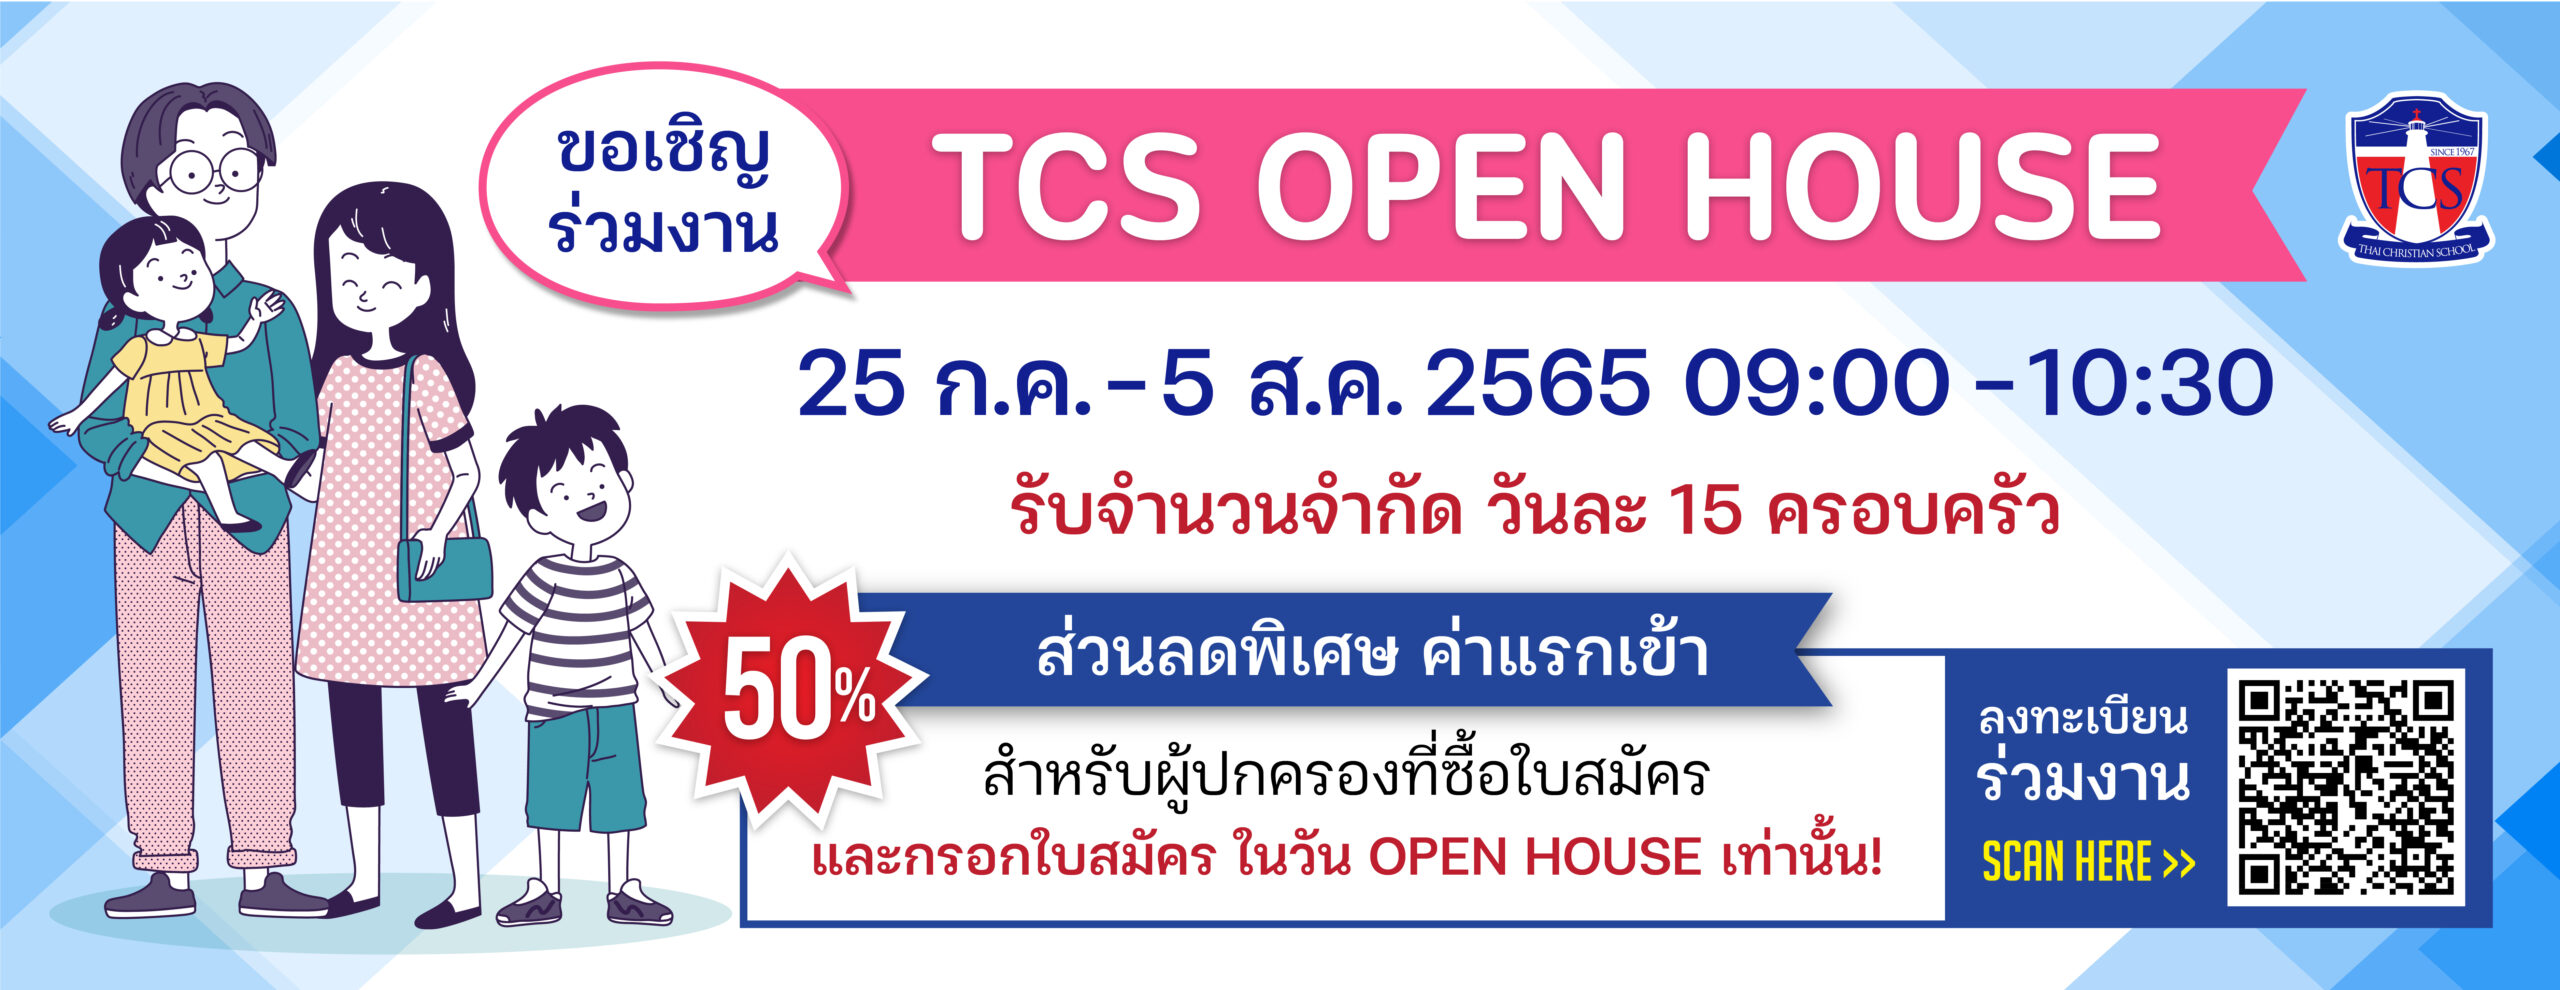 (Thai) TCS Open House